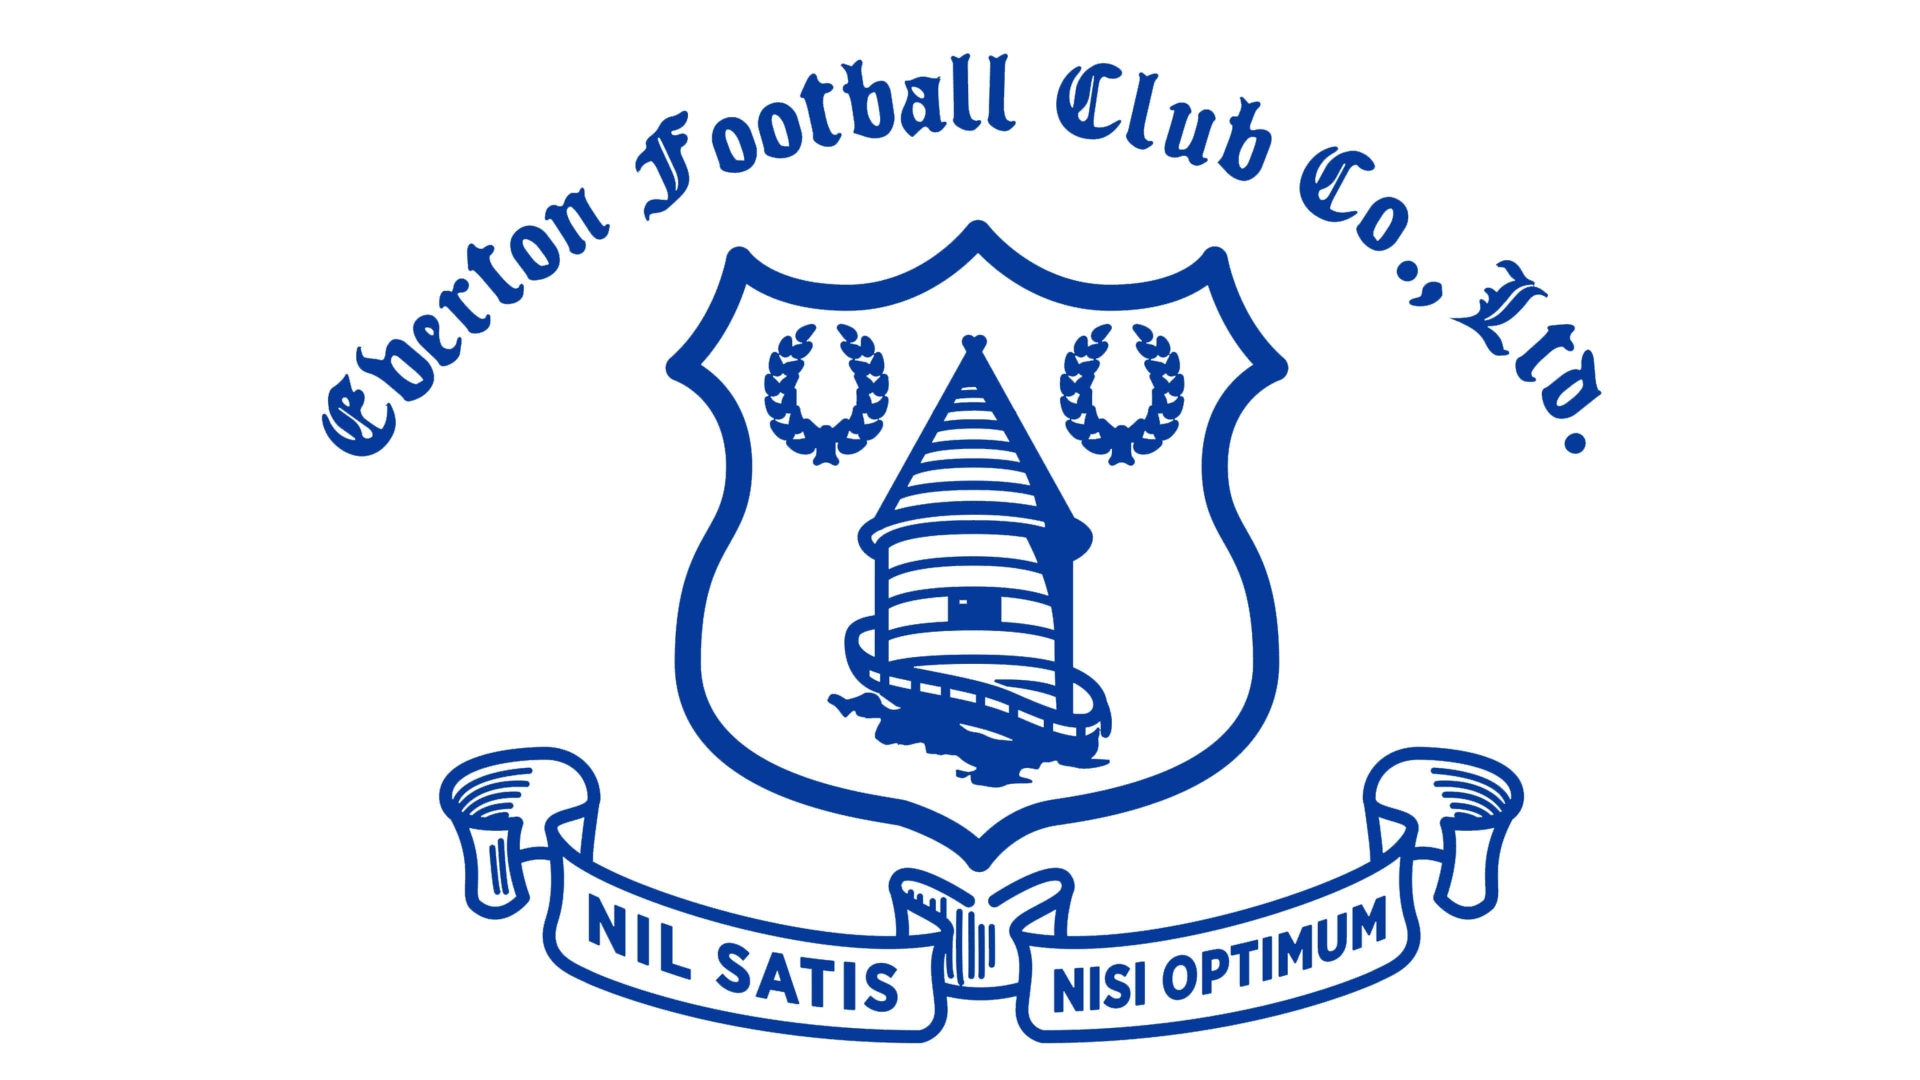 Download mobile wallpaper Sports, Logo, Emblem, Soccer, Everton F C for free.